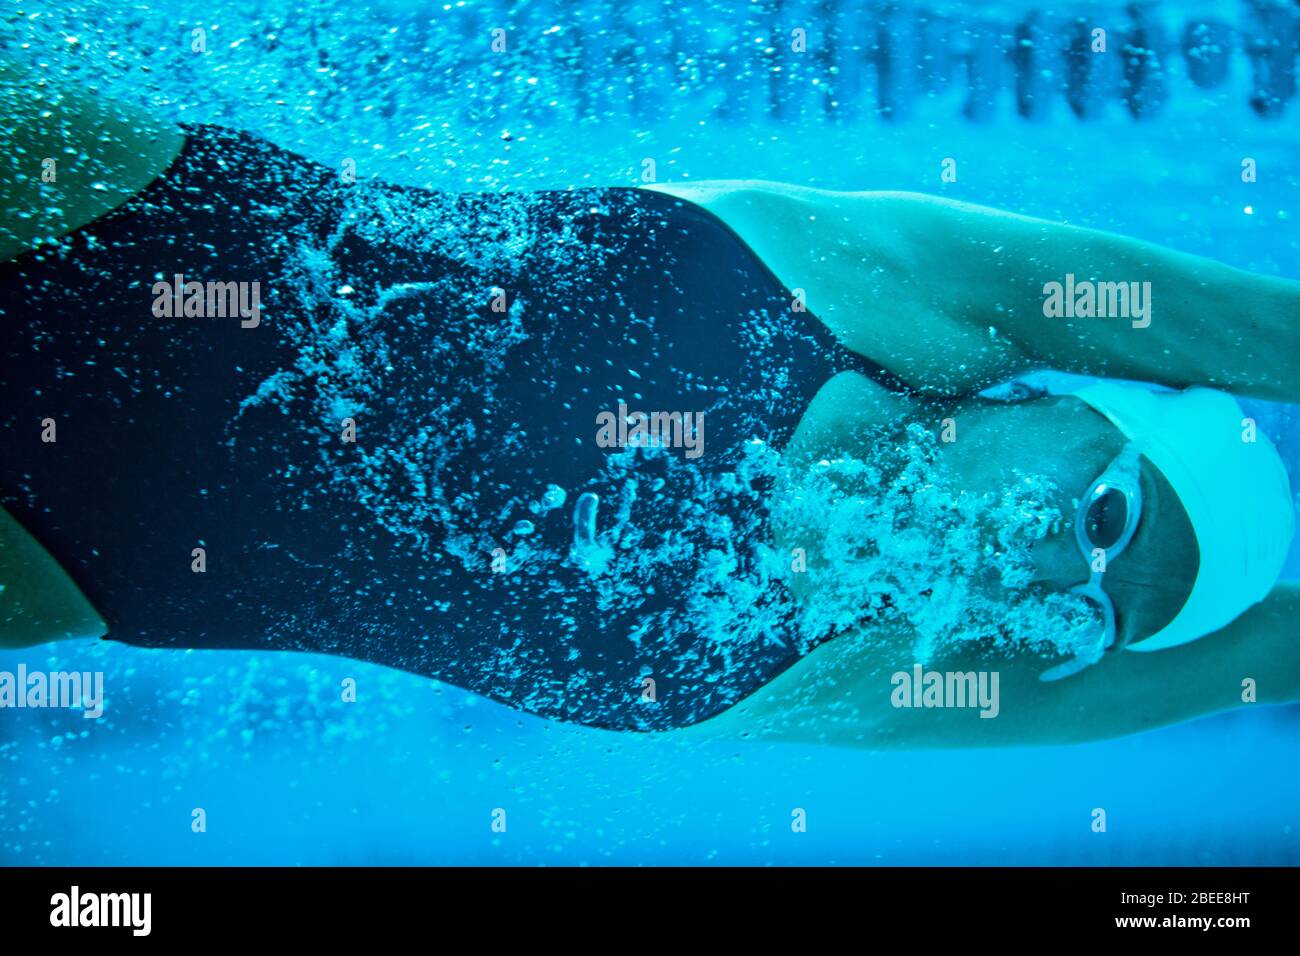 Nuotatore femminile sotto l'acqua Foto Stock